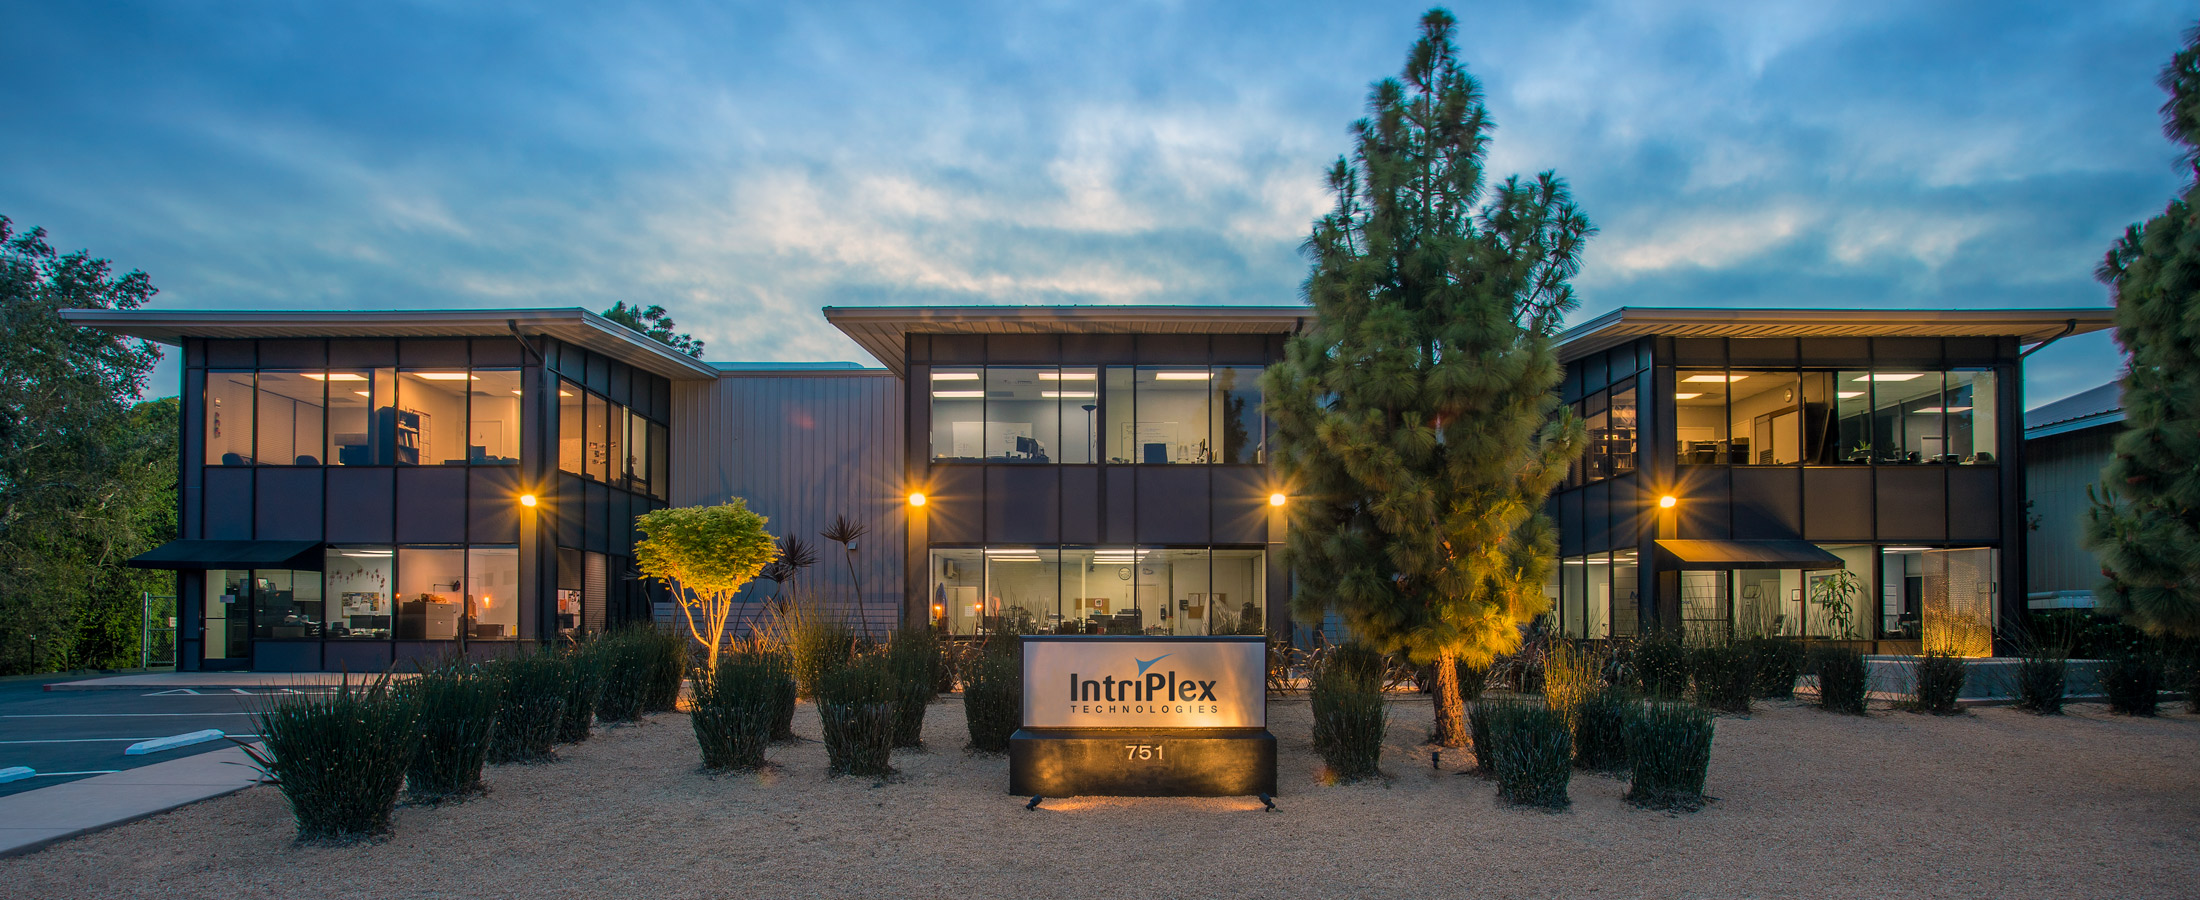 캘리포니아주 산타바바라에 위치한 IntriPlex Technologies 본사